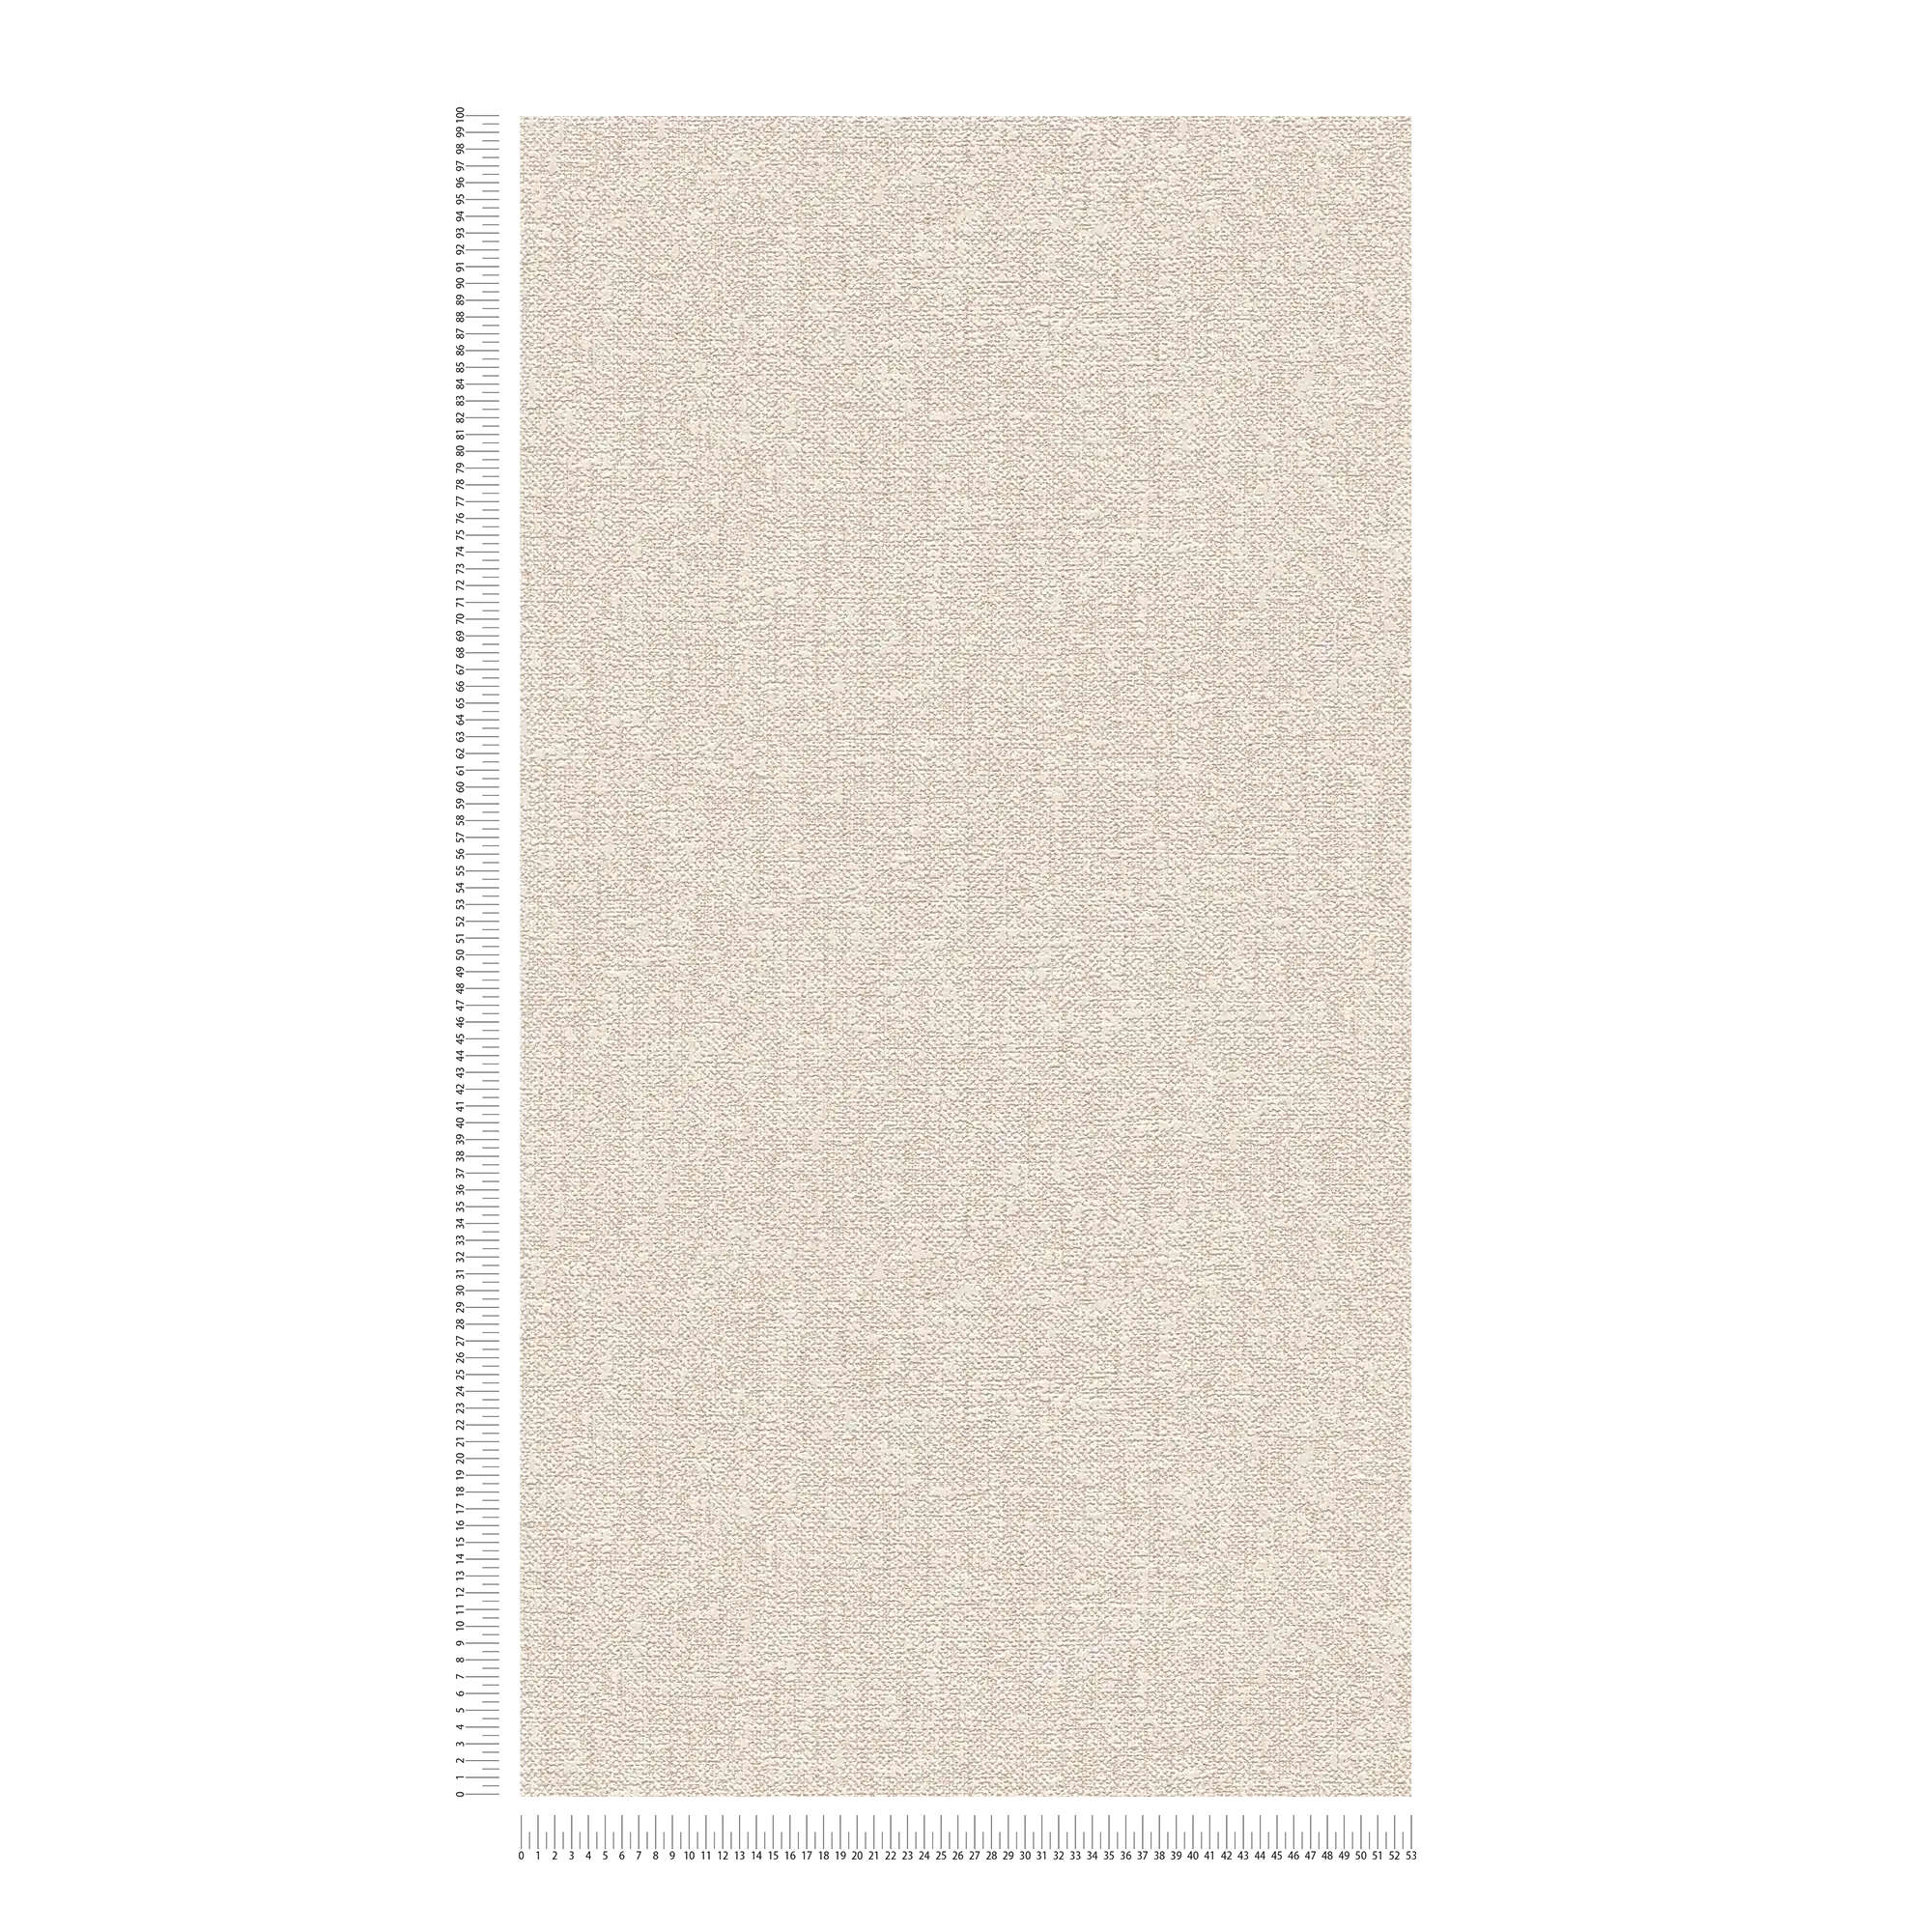             Papierbehang met textielstructuur in linnenlook - bruin
        